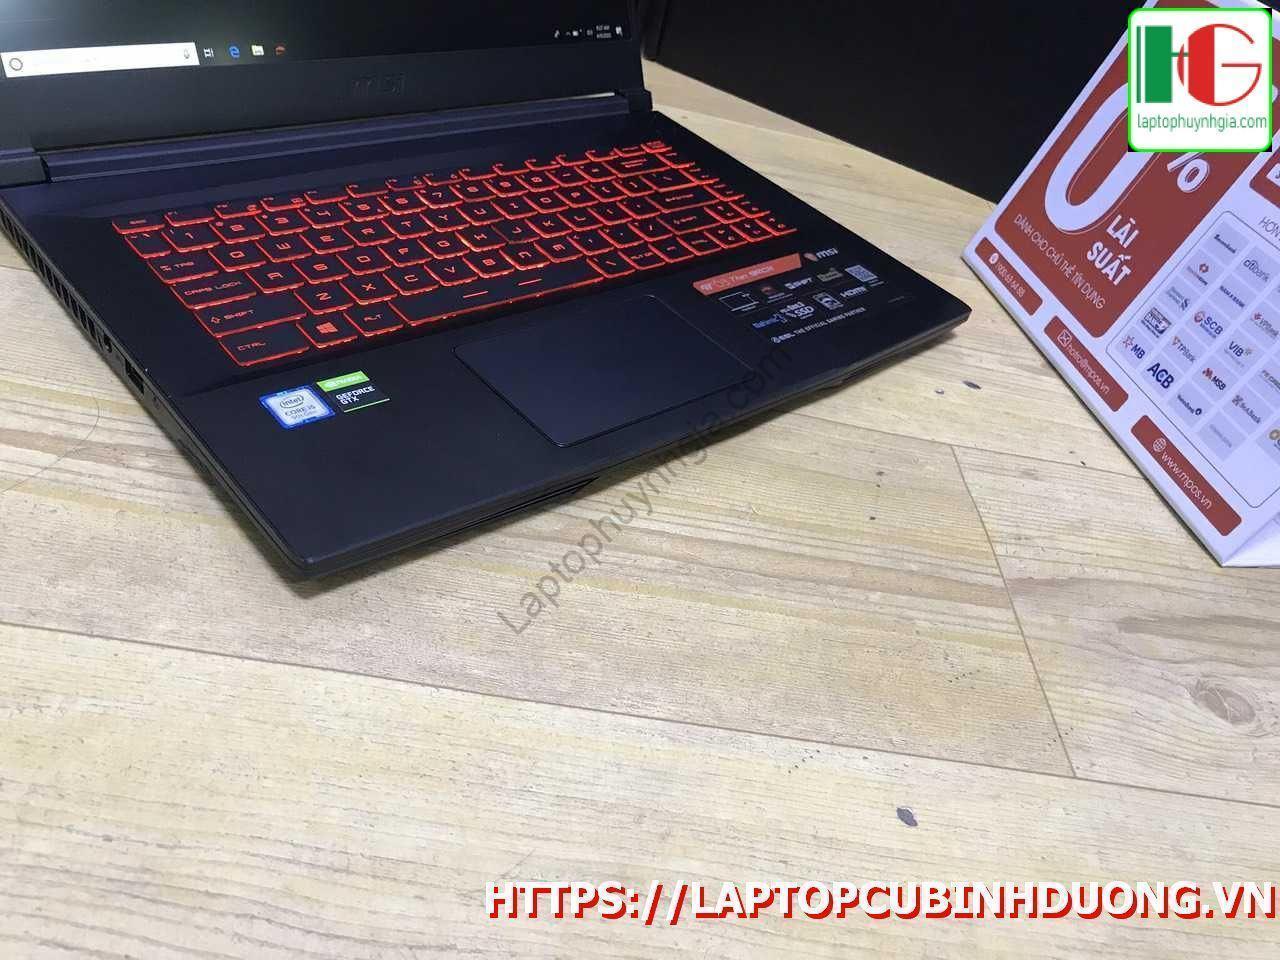 Laptop Msi Gf63 I5 9300h 8g Ssd 512g Nvidia Gtx1050ti Laptopcubinhduong.vn 3 [kích Thước Gốc] Result